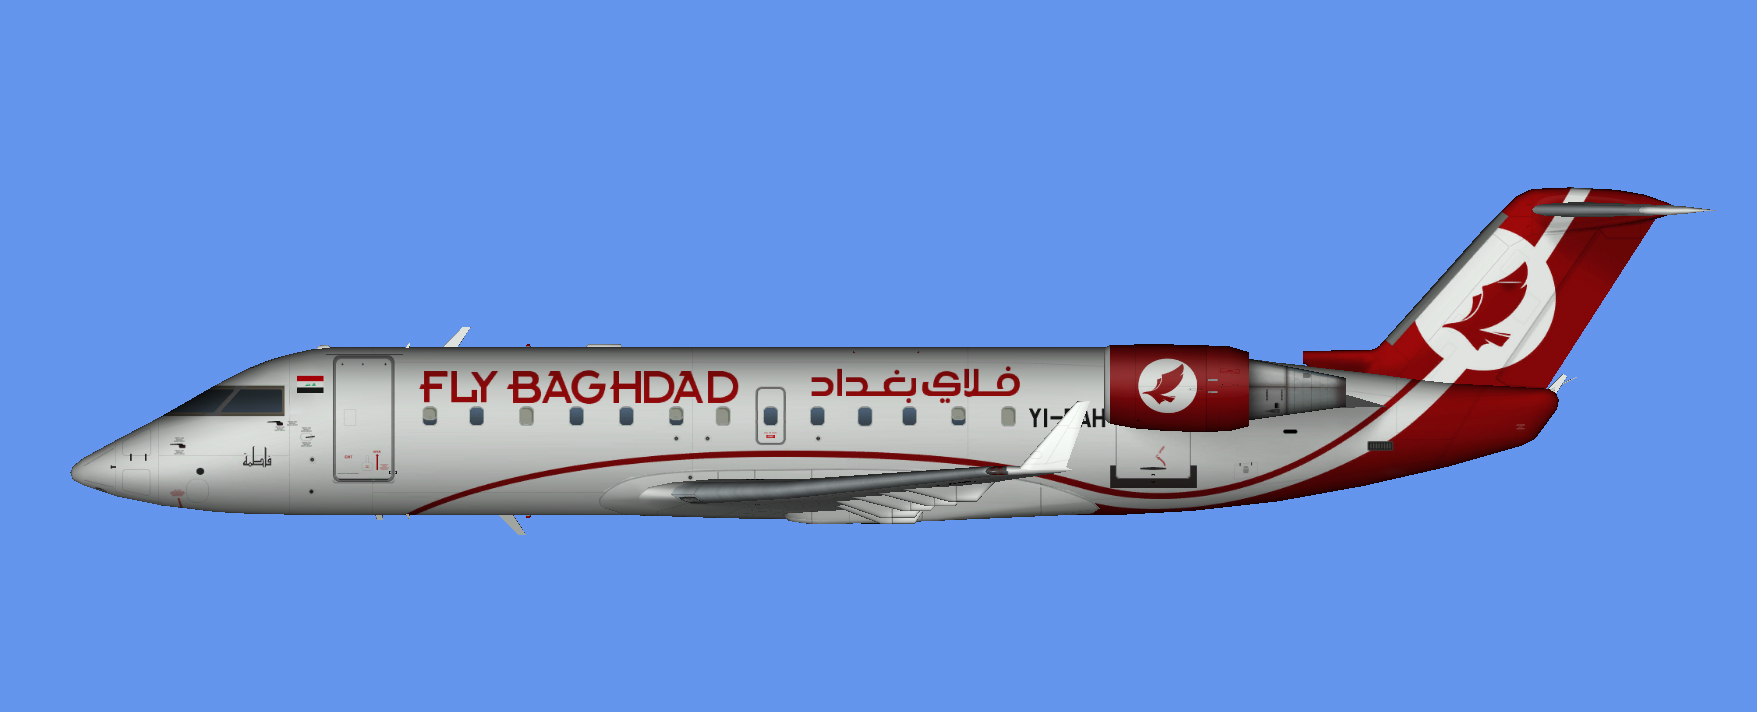 Fly Baghdad Bombardier CRJ-200